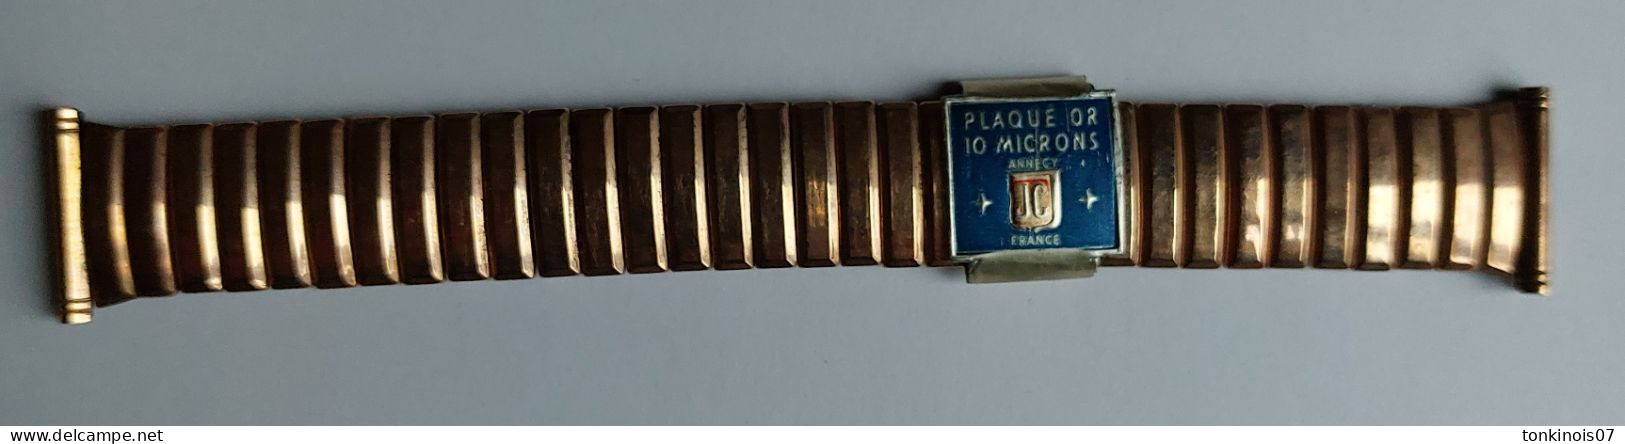 Bracelet De Montre Années 1930/1950 En Métal Plaqué Or 10 Microns Annecy JC France - Horloge: Antiek